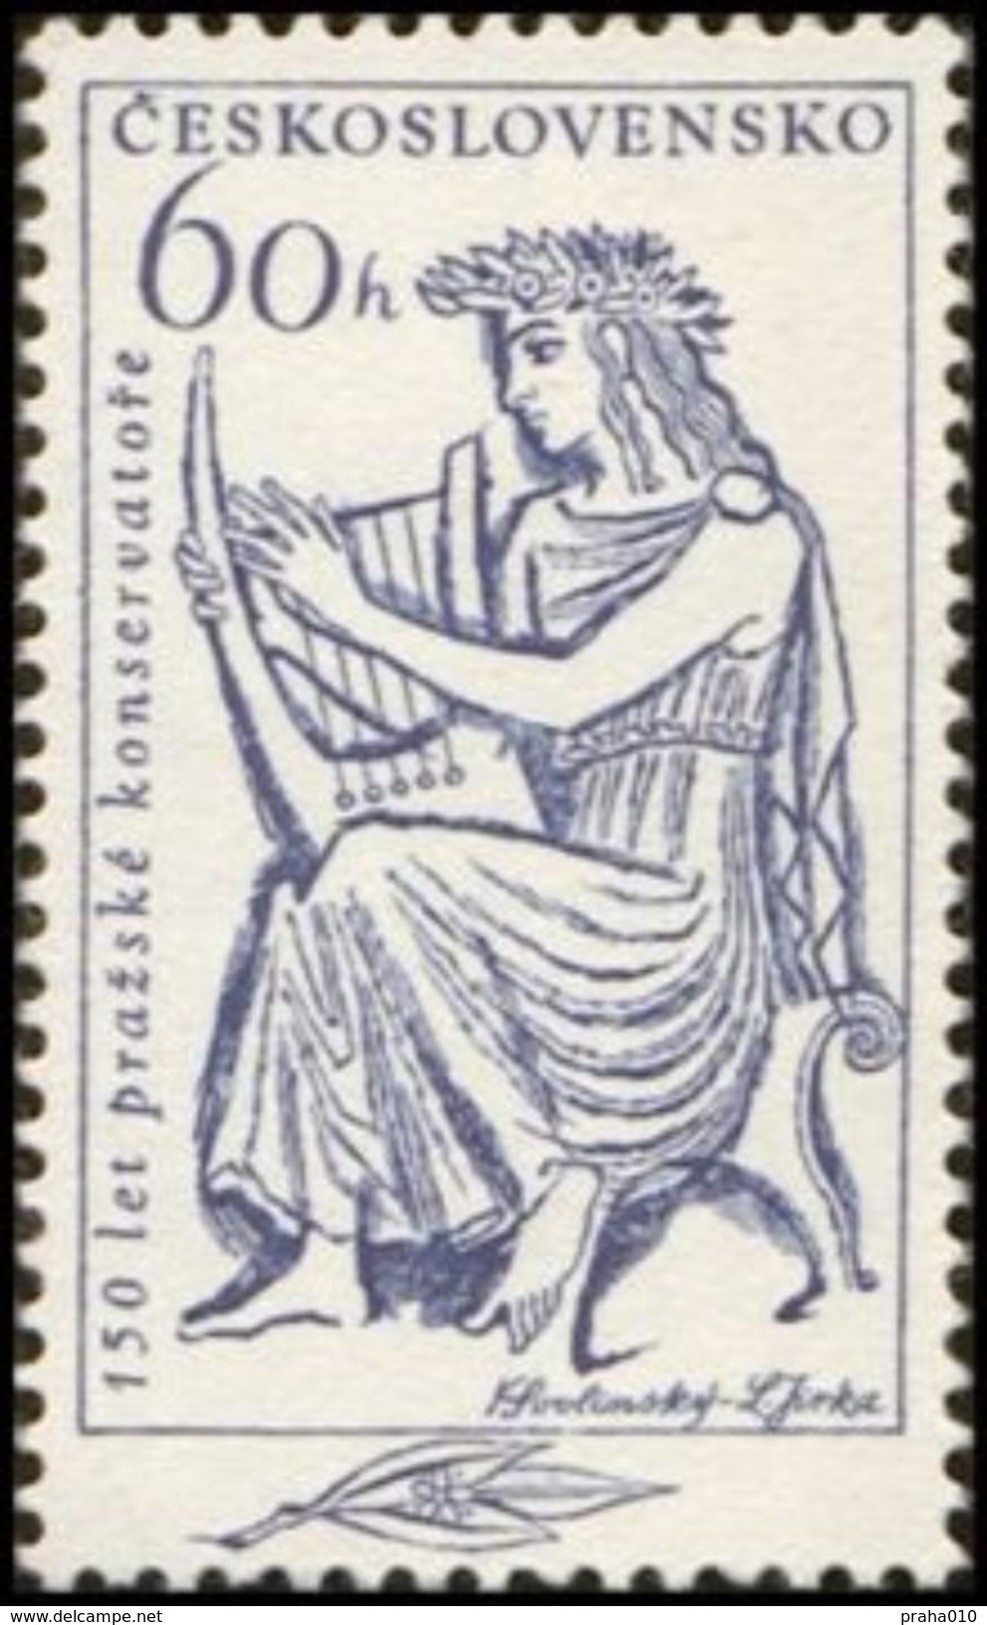 Czechoslovakia / Stamps (1961) 1181: 150th Anniversary Of Prague Conservatory (Apollon Playing Lyre) Paint. K. Svolinsky - Mythology